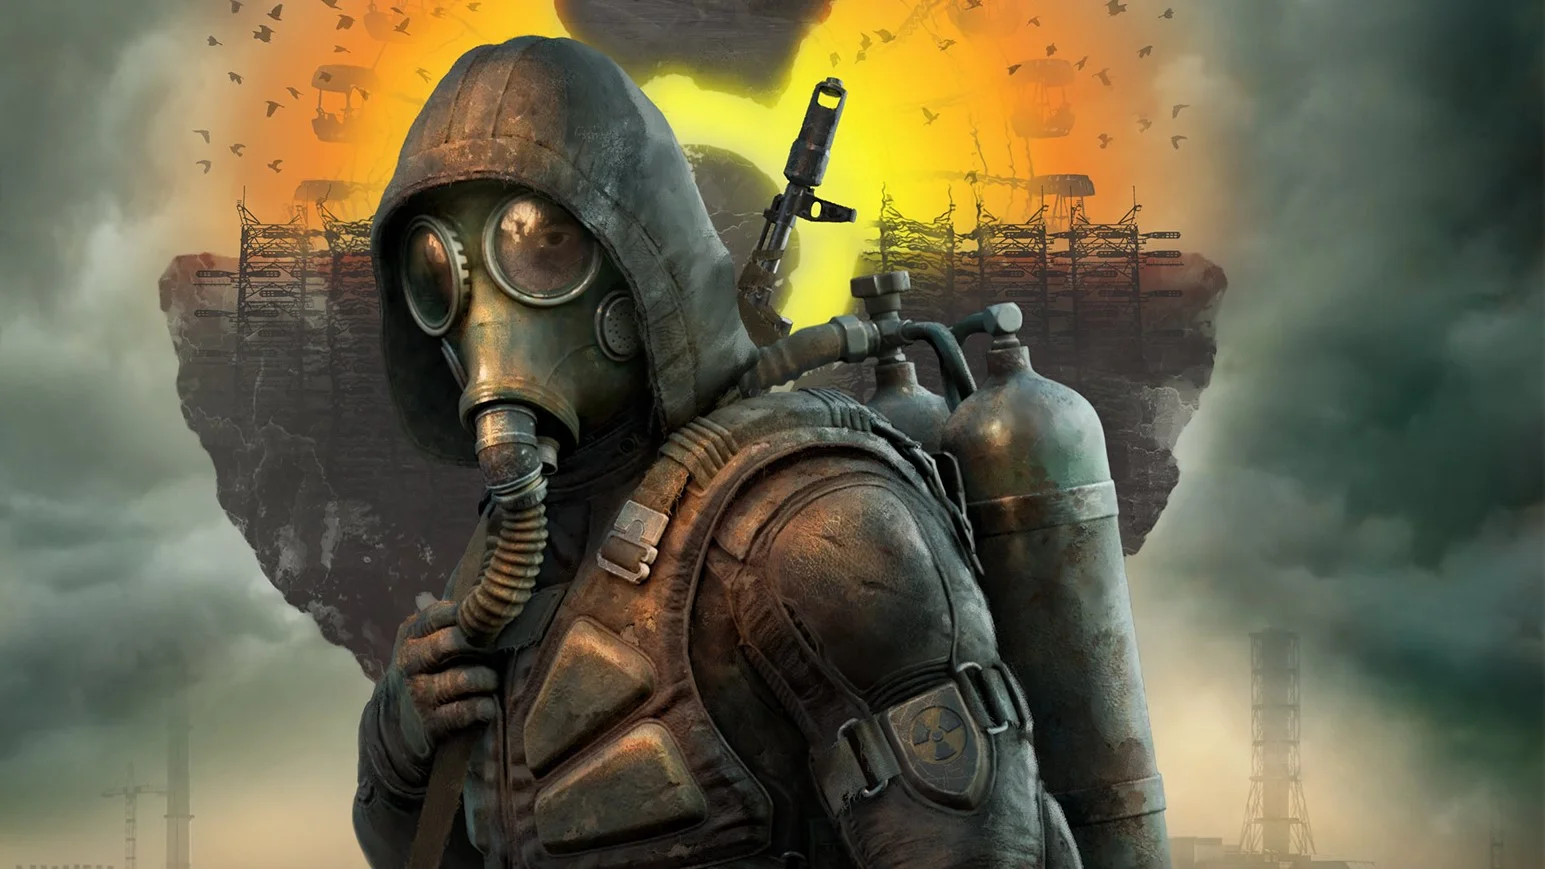 На E3 2021 показали первый геймплейный трейлер S.T.A.L.K.E.R. 2: Heart of Chernobyl. Это одна из самых ожидаемых игр и продолжение популярной серии шутеров украинской студии GSC Game World (к 2010 году было продано более четырёх миллионов копий всех игр серии). Рассказываем, что происходило в предыдущих частях франшизы, и объясняем, как S.T.A.L.K.E.R. стала культурным феноменом. И здесь же — всё, что известно о S.T.A.L.K.E.R. 2 на данный момент.